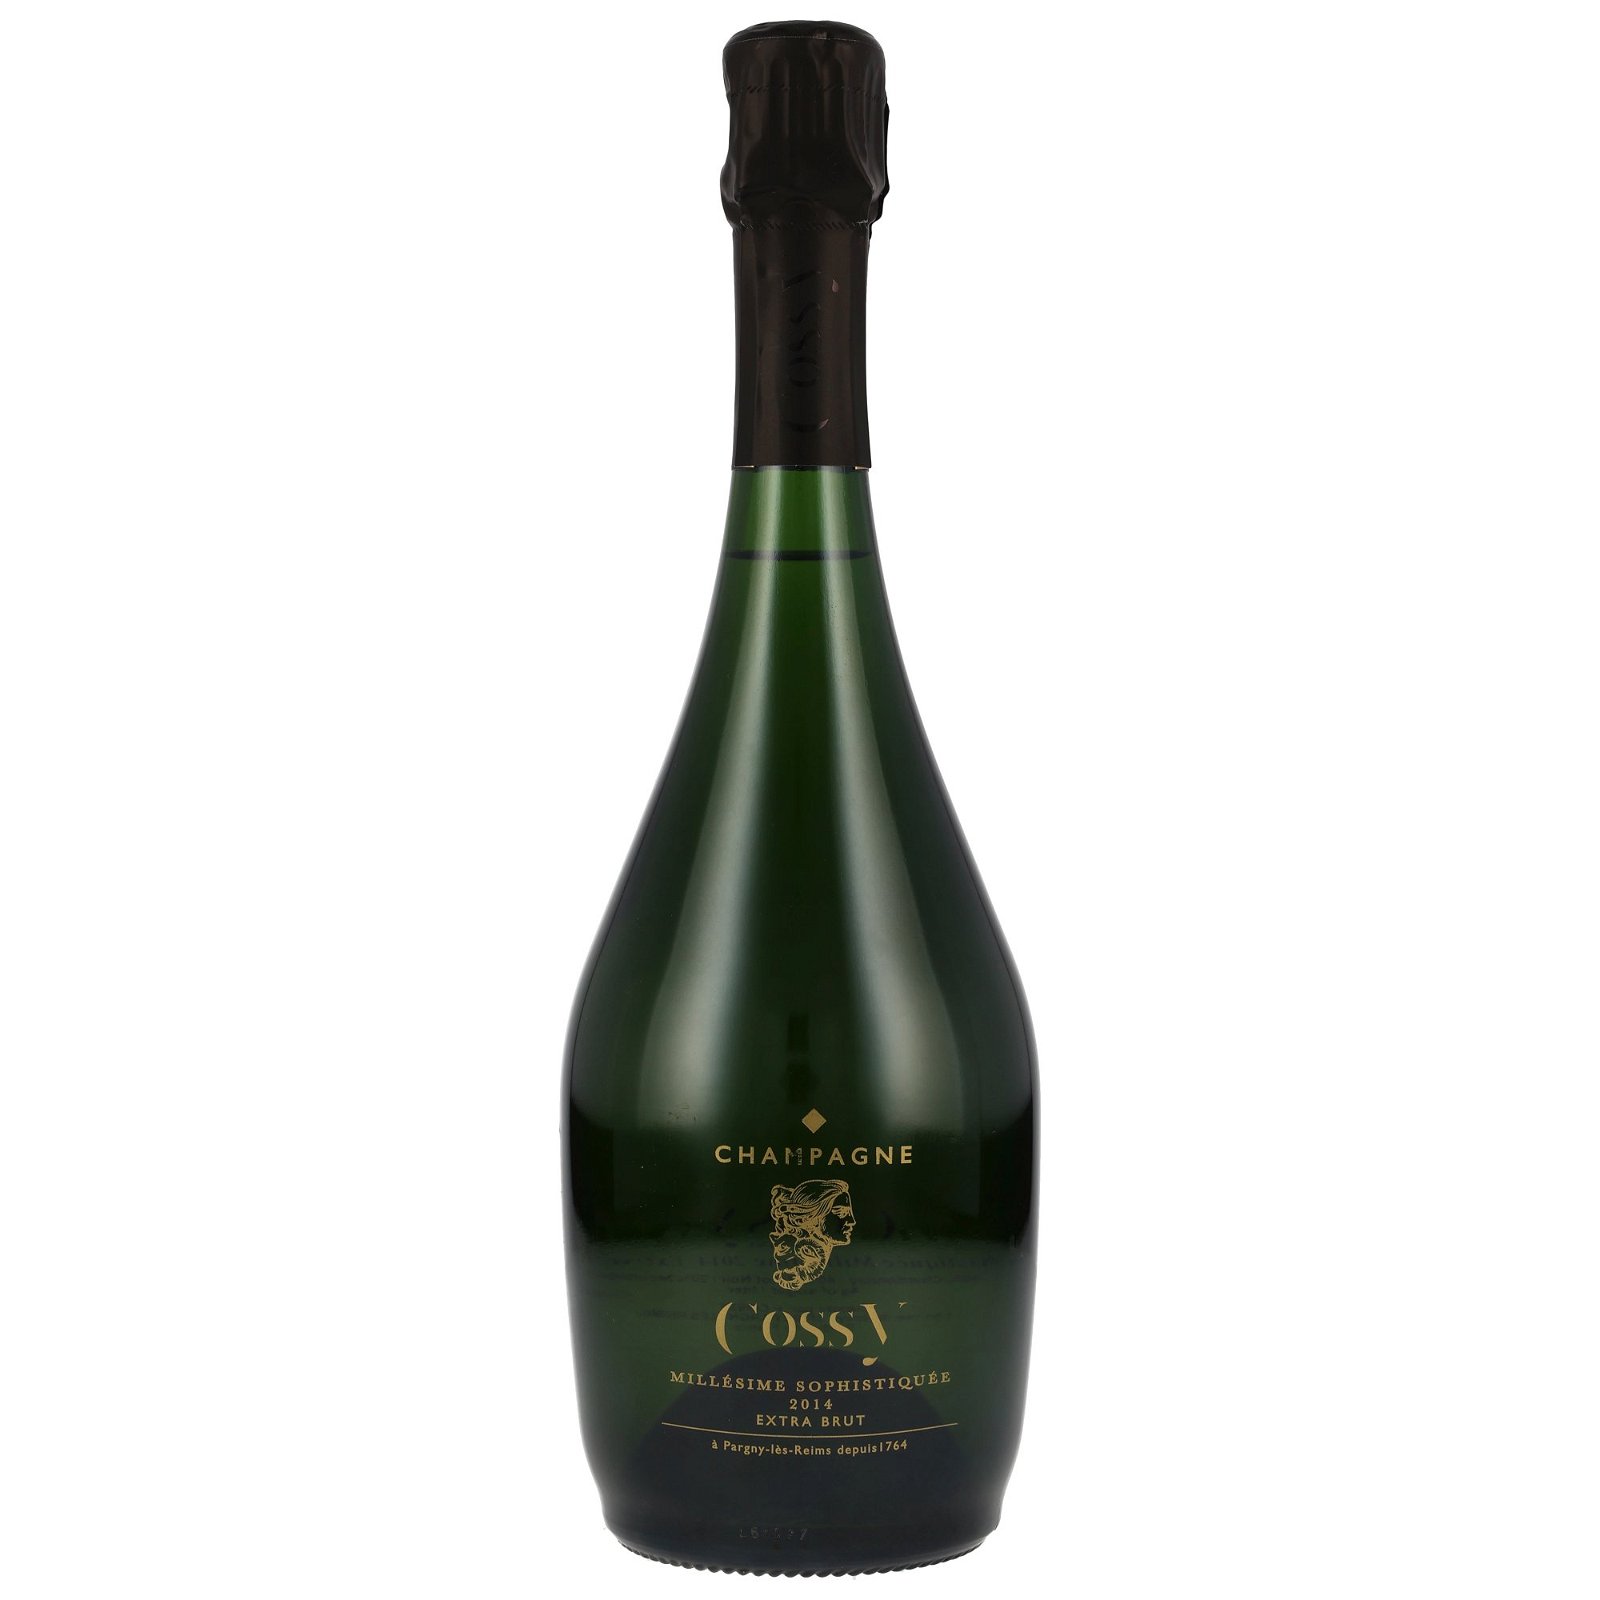 Cossy Millésime Sophistiquée 2014 Extra Brut Champagner